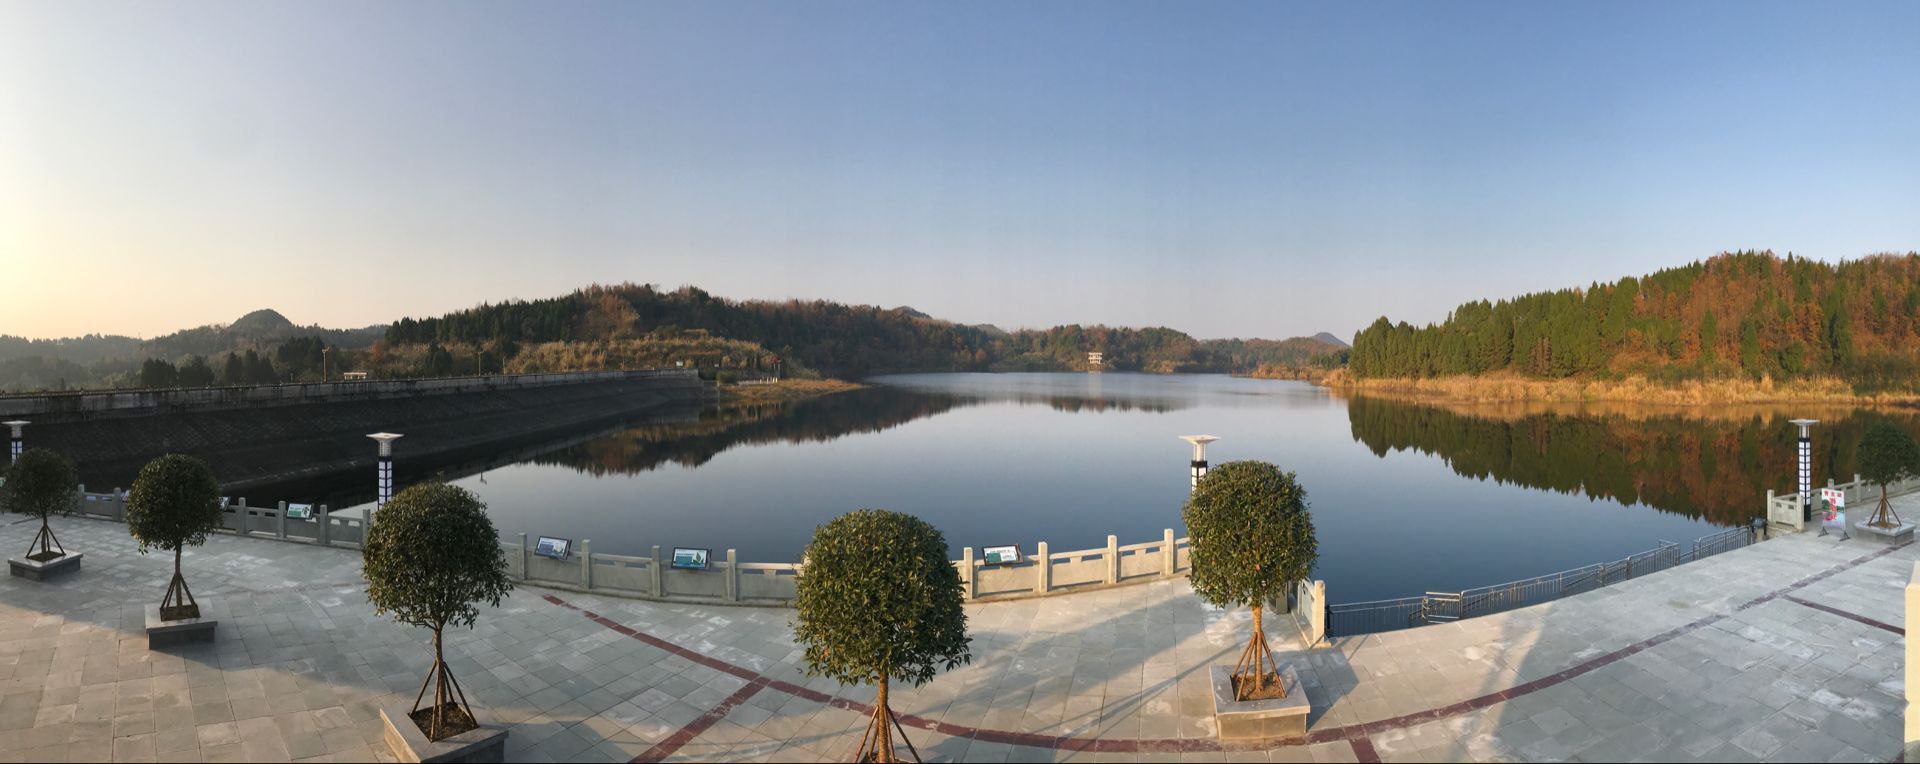 西充青龙湖图片